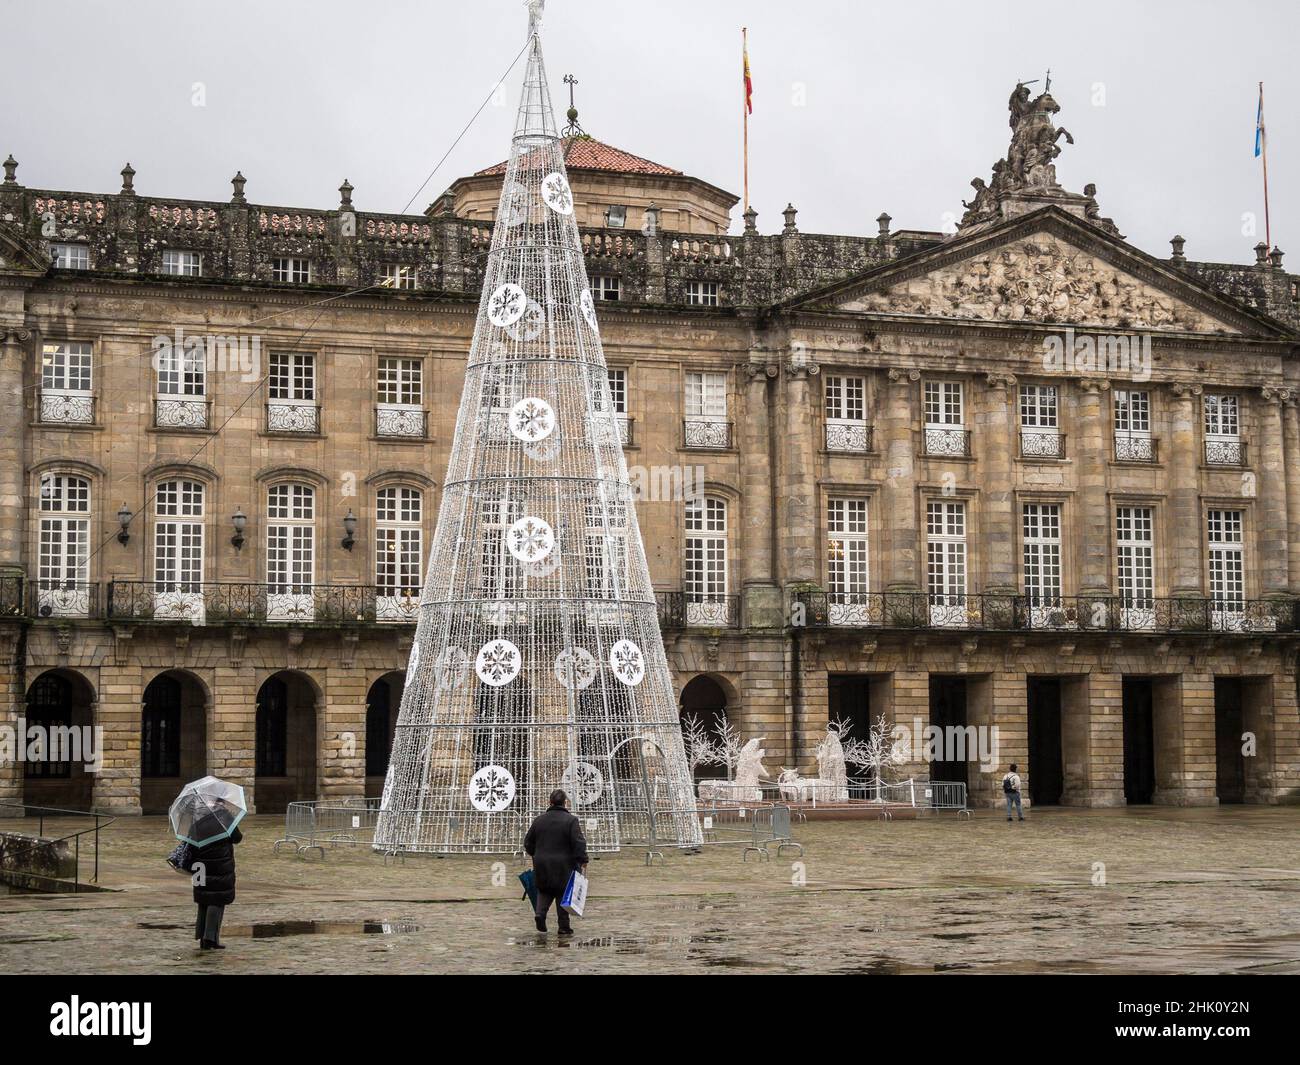 City Hall of Santiago de Compostela. La Coruna. Galicia. Spain. Stock Photo